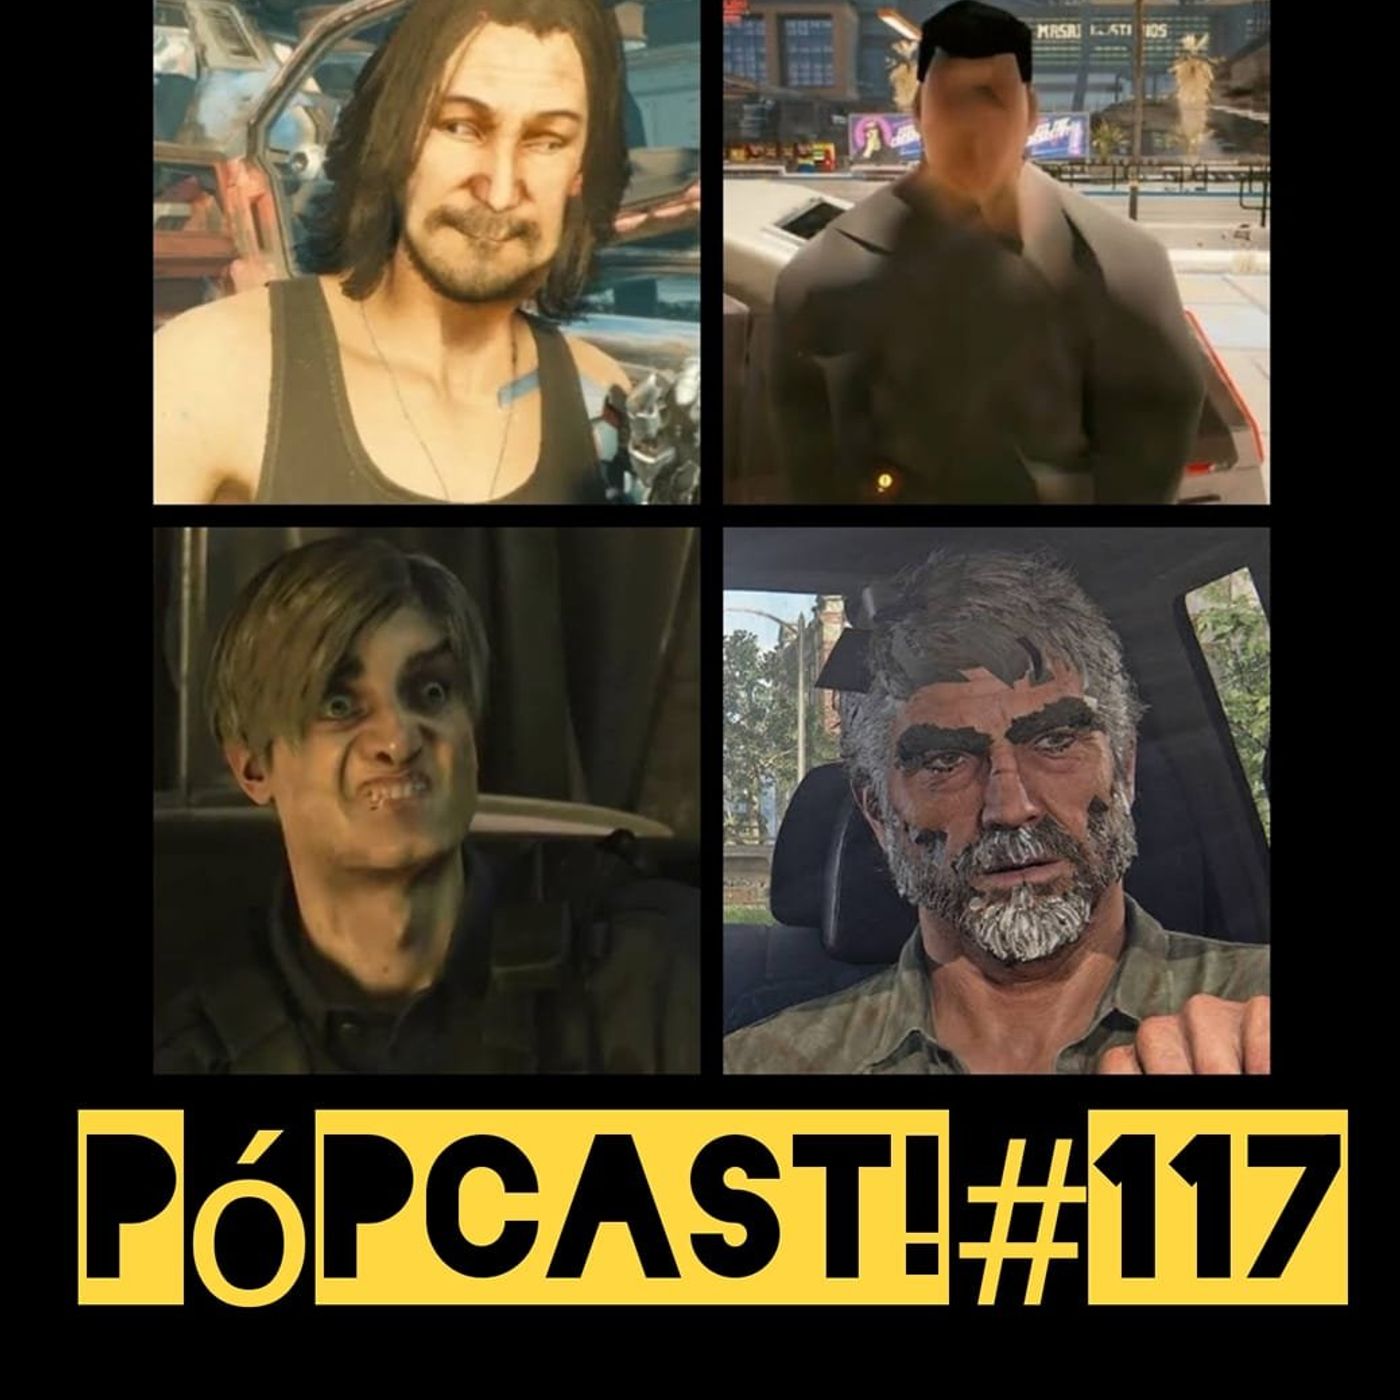 Pópcast! #117 - Jogos cagados no lançamento